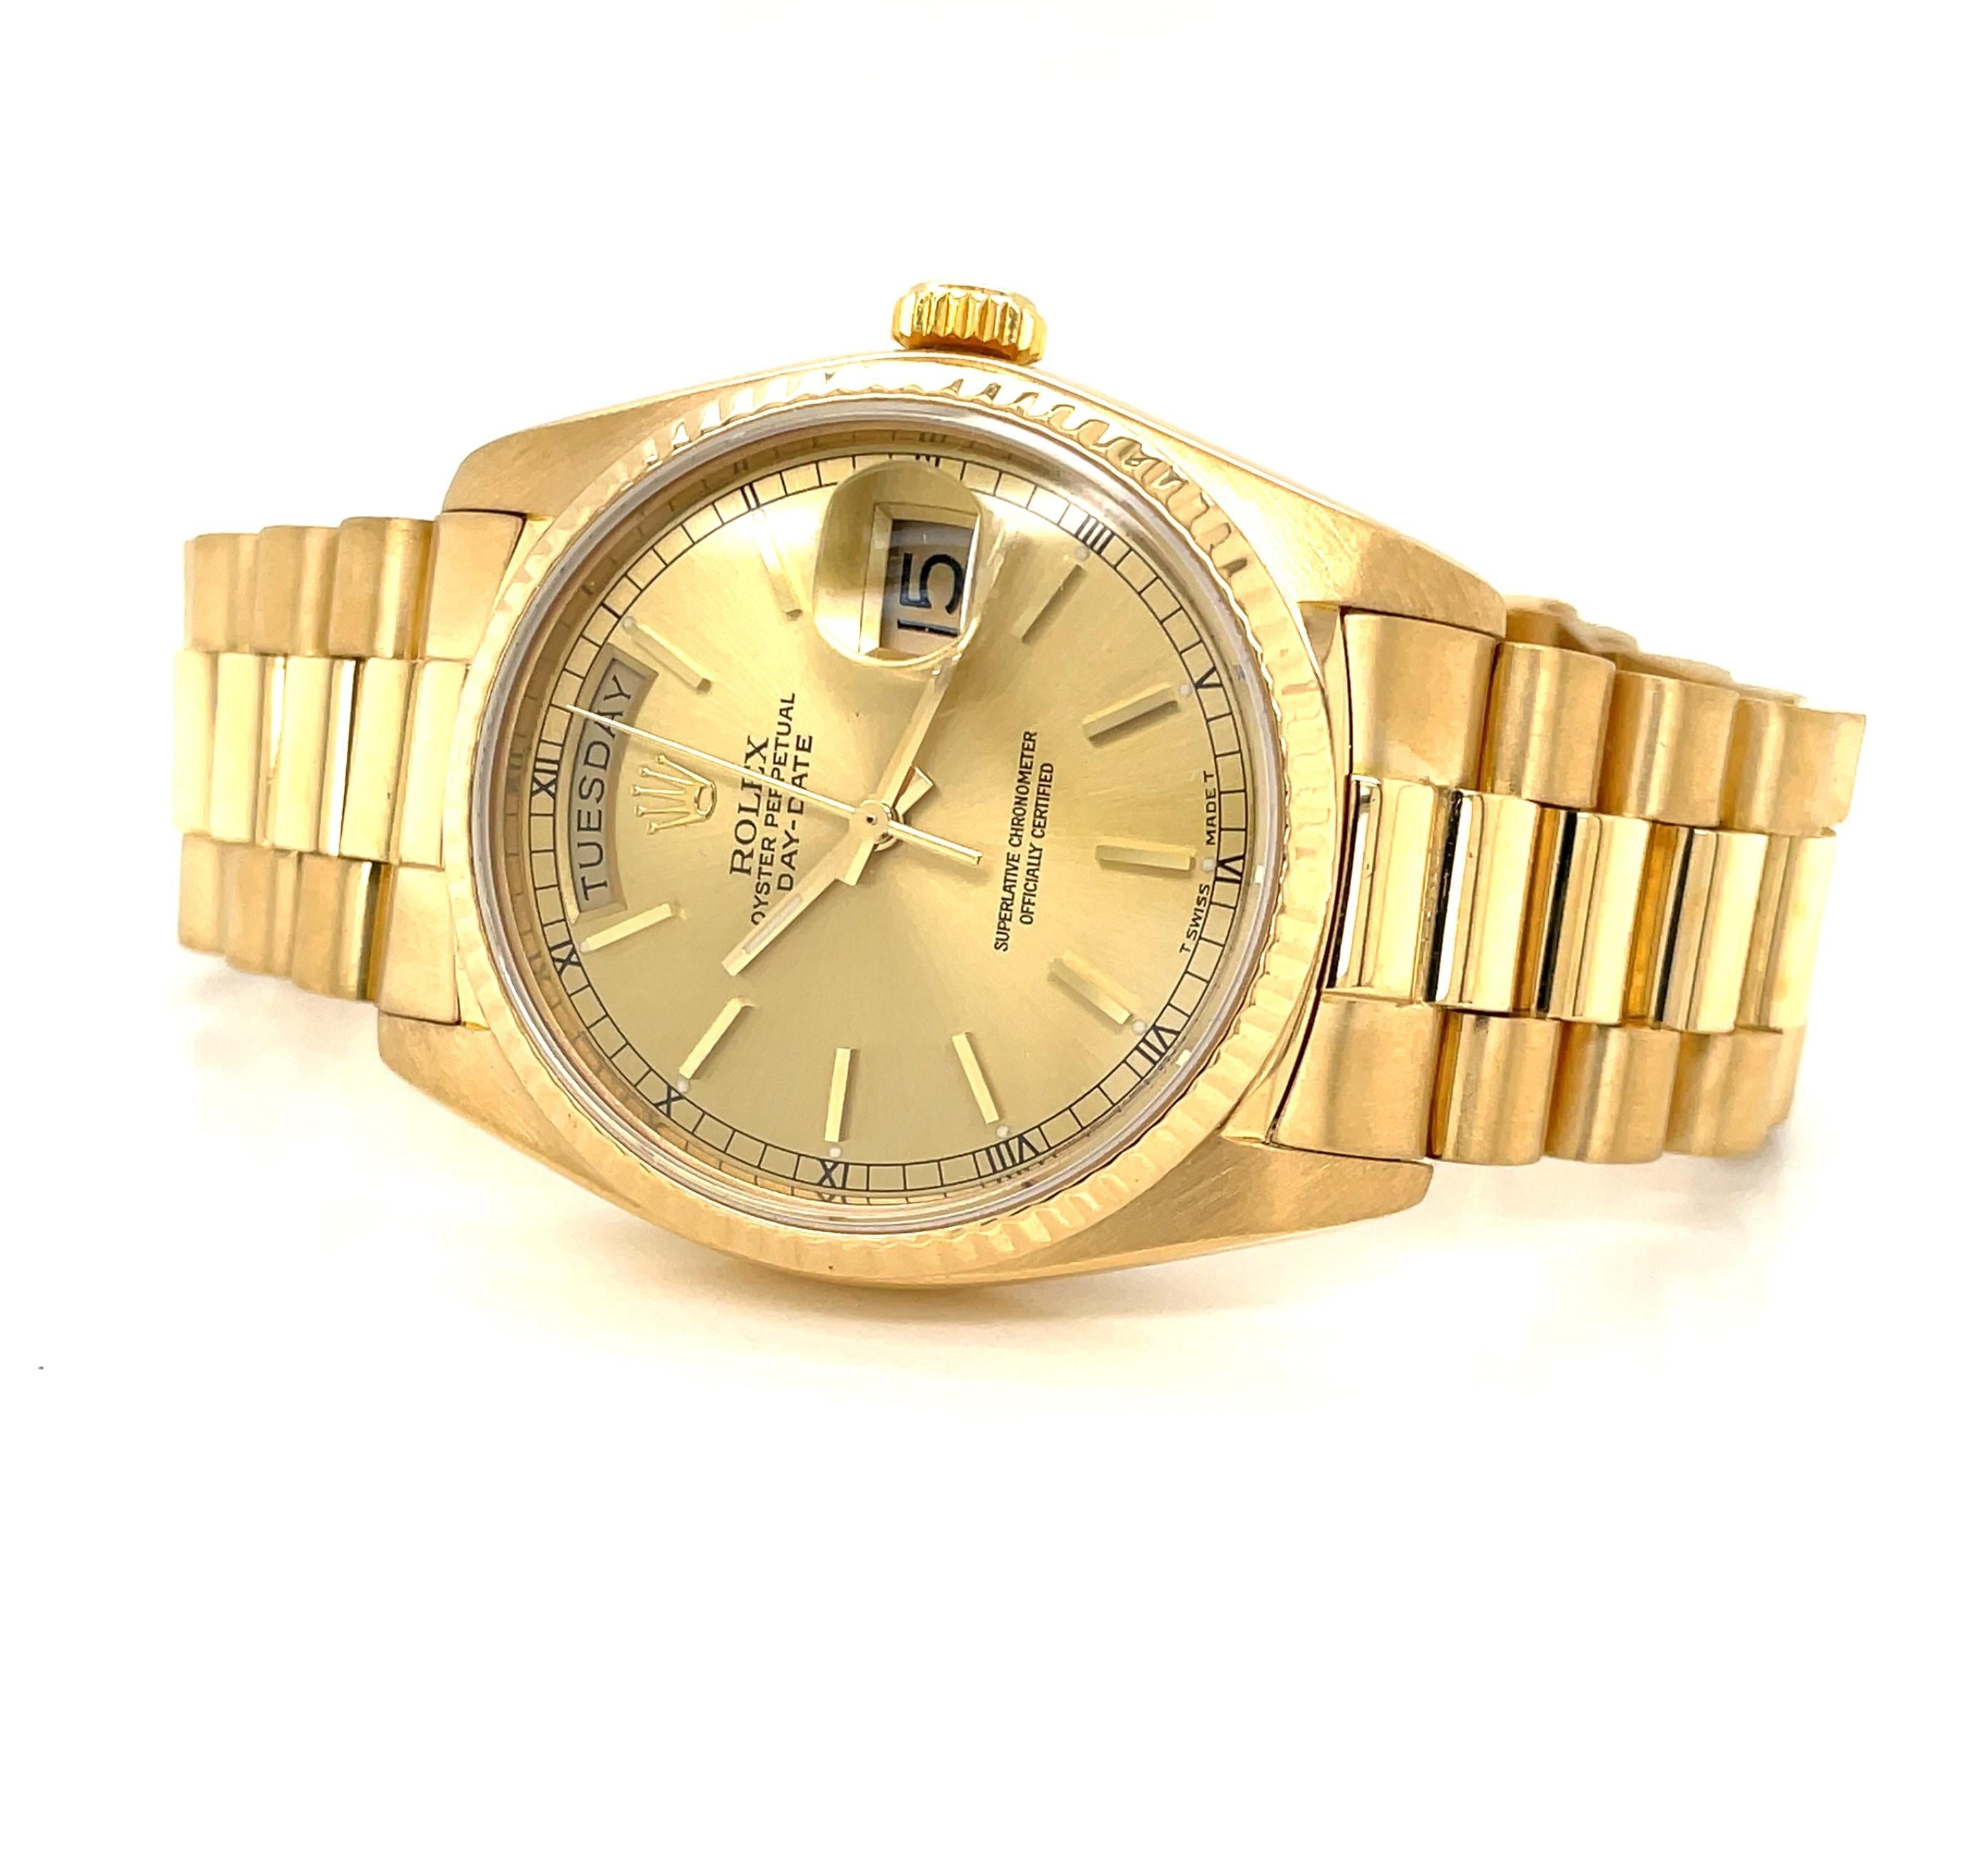 En riche or jaune 18 carats, appréciez cette iconique montre-bracelet de luxe pour homme Rolex President 3055 Oyster Perpetual Day Date 36 mm, modèle 18038. Vers 1983, ce style emblématique de Rolex a été porté par de nombreuses personnalités